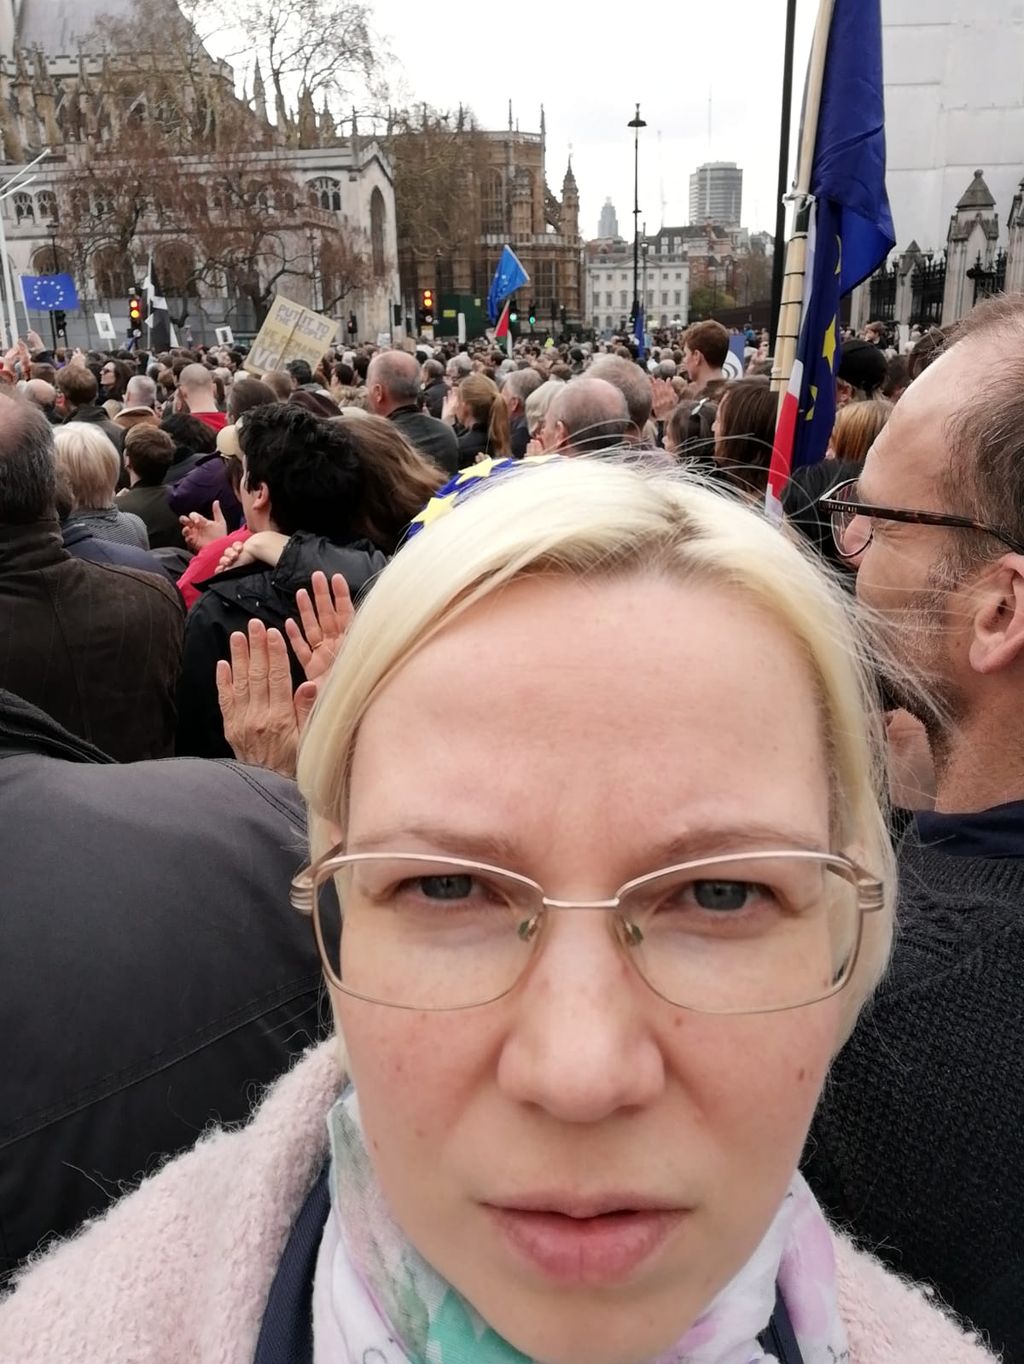 Suomalainen Vivi, 37, mukana Lontoon historian suurimmassa mielenosoituksessa – tältä näytti, kun miljoona protestoijaa marssi: ”Ihmiset pitävät tilannetta naurettavana”